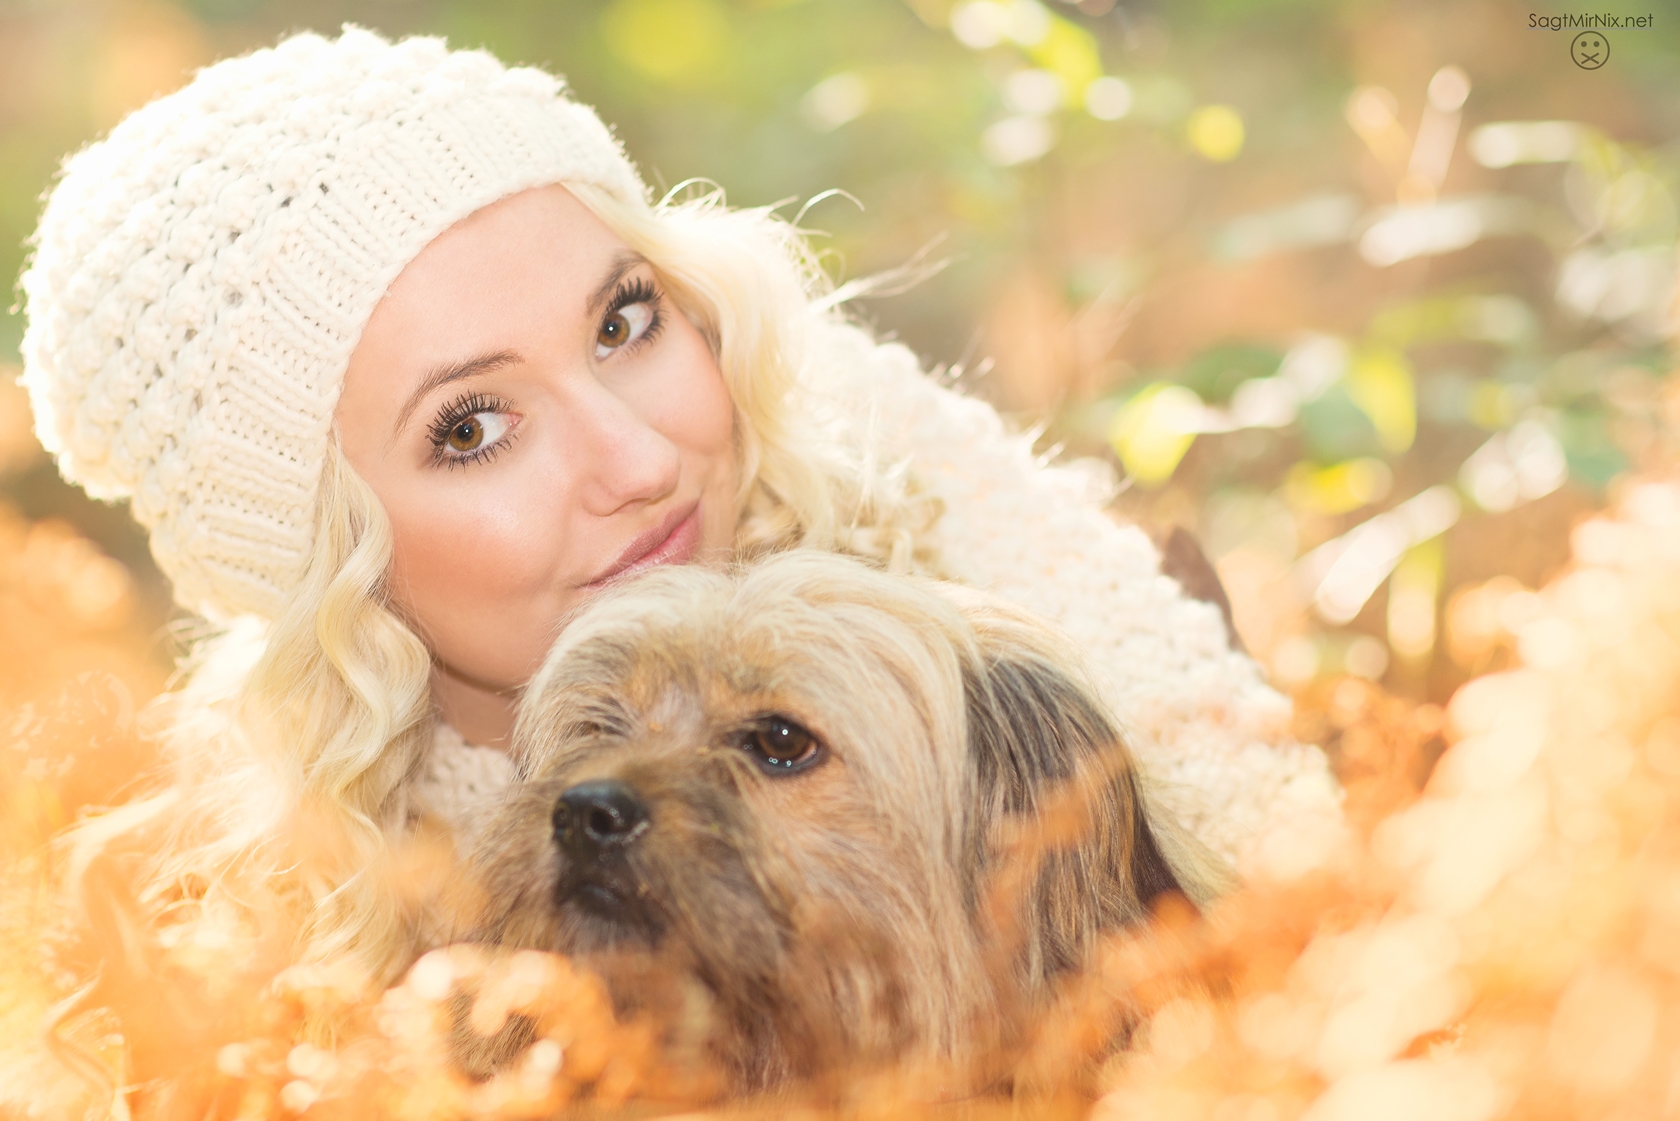 Gegenlicht-Portrait im Herbstwald: Junge Frau mit Hund